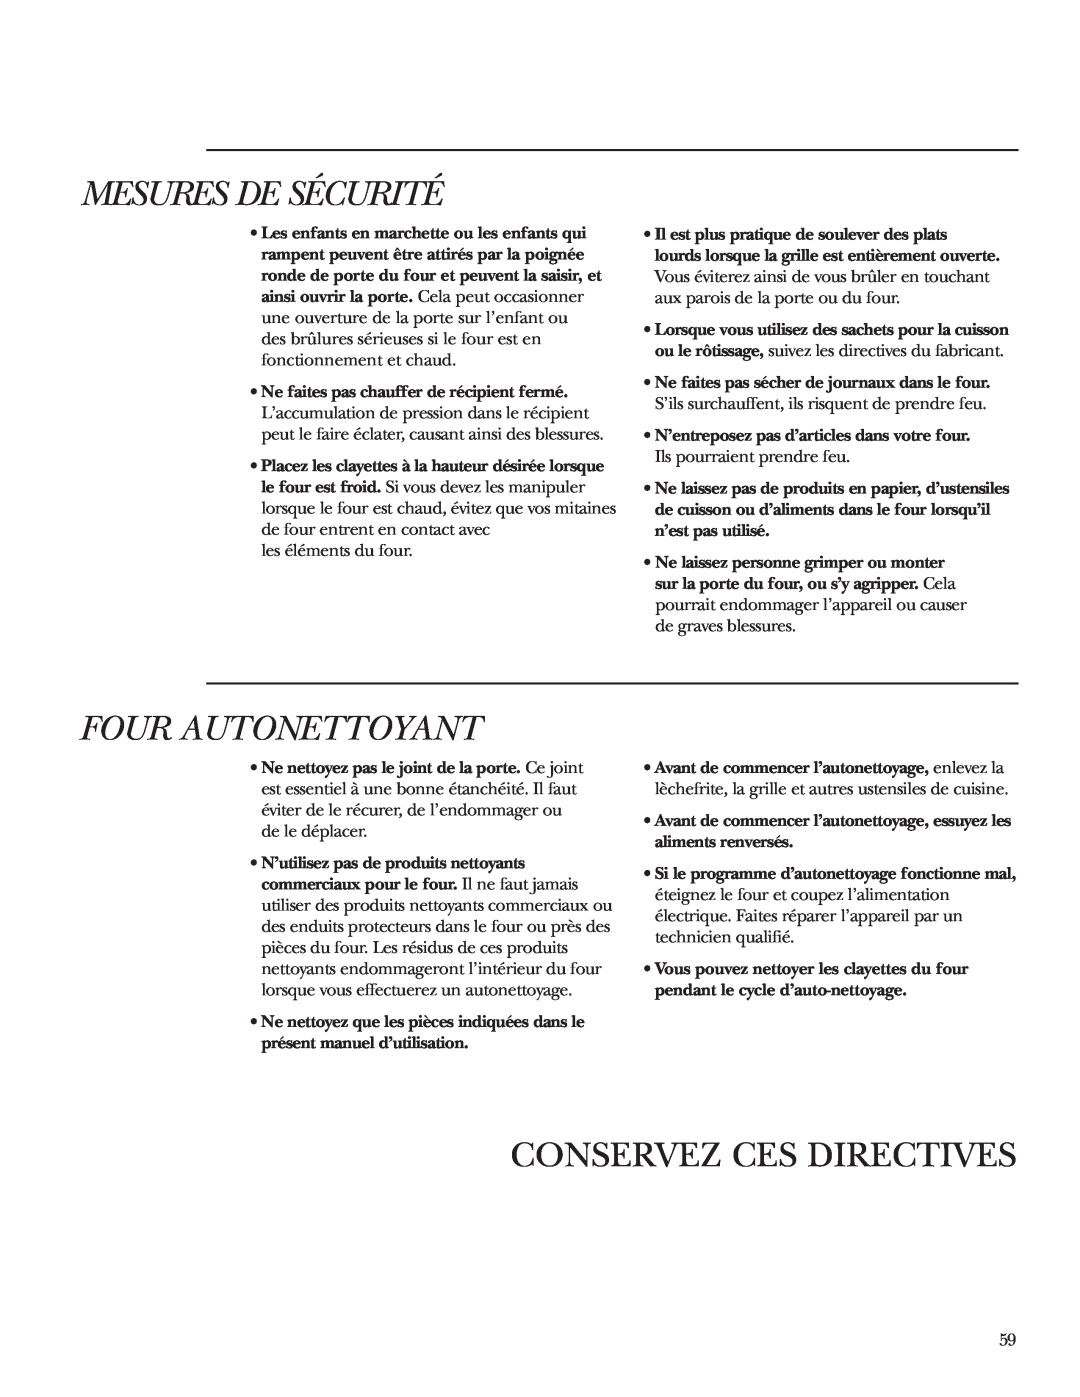 GE ZET1R, ZET2R owner manual Mesures De Sécurité, Four Autonettoyant, Conservez Ces Directives 